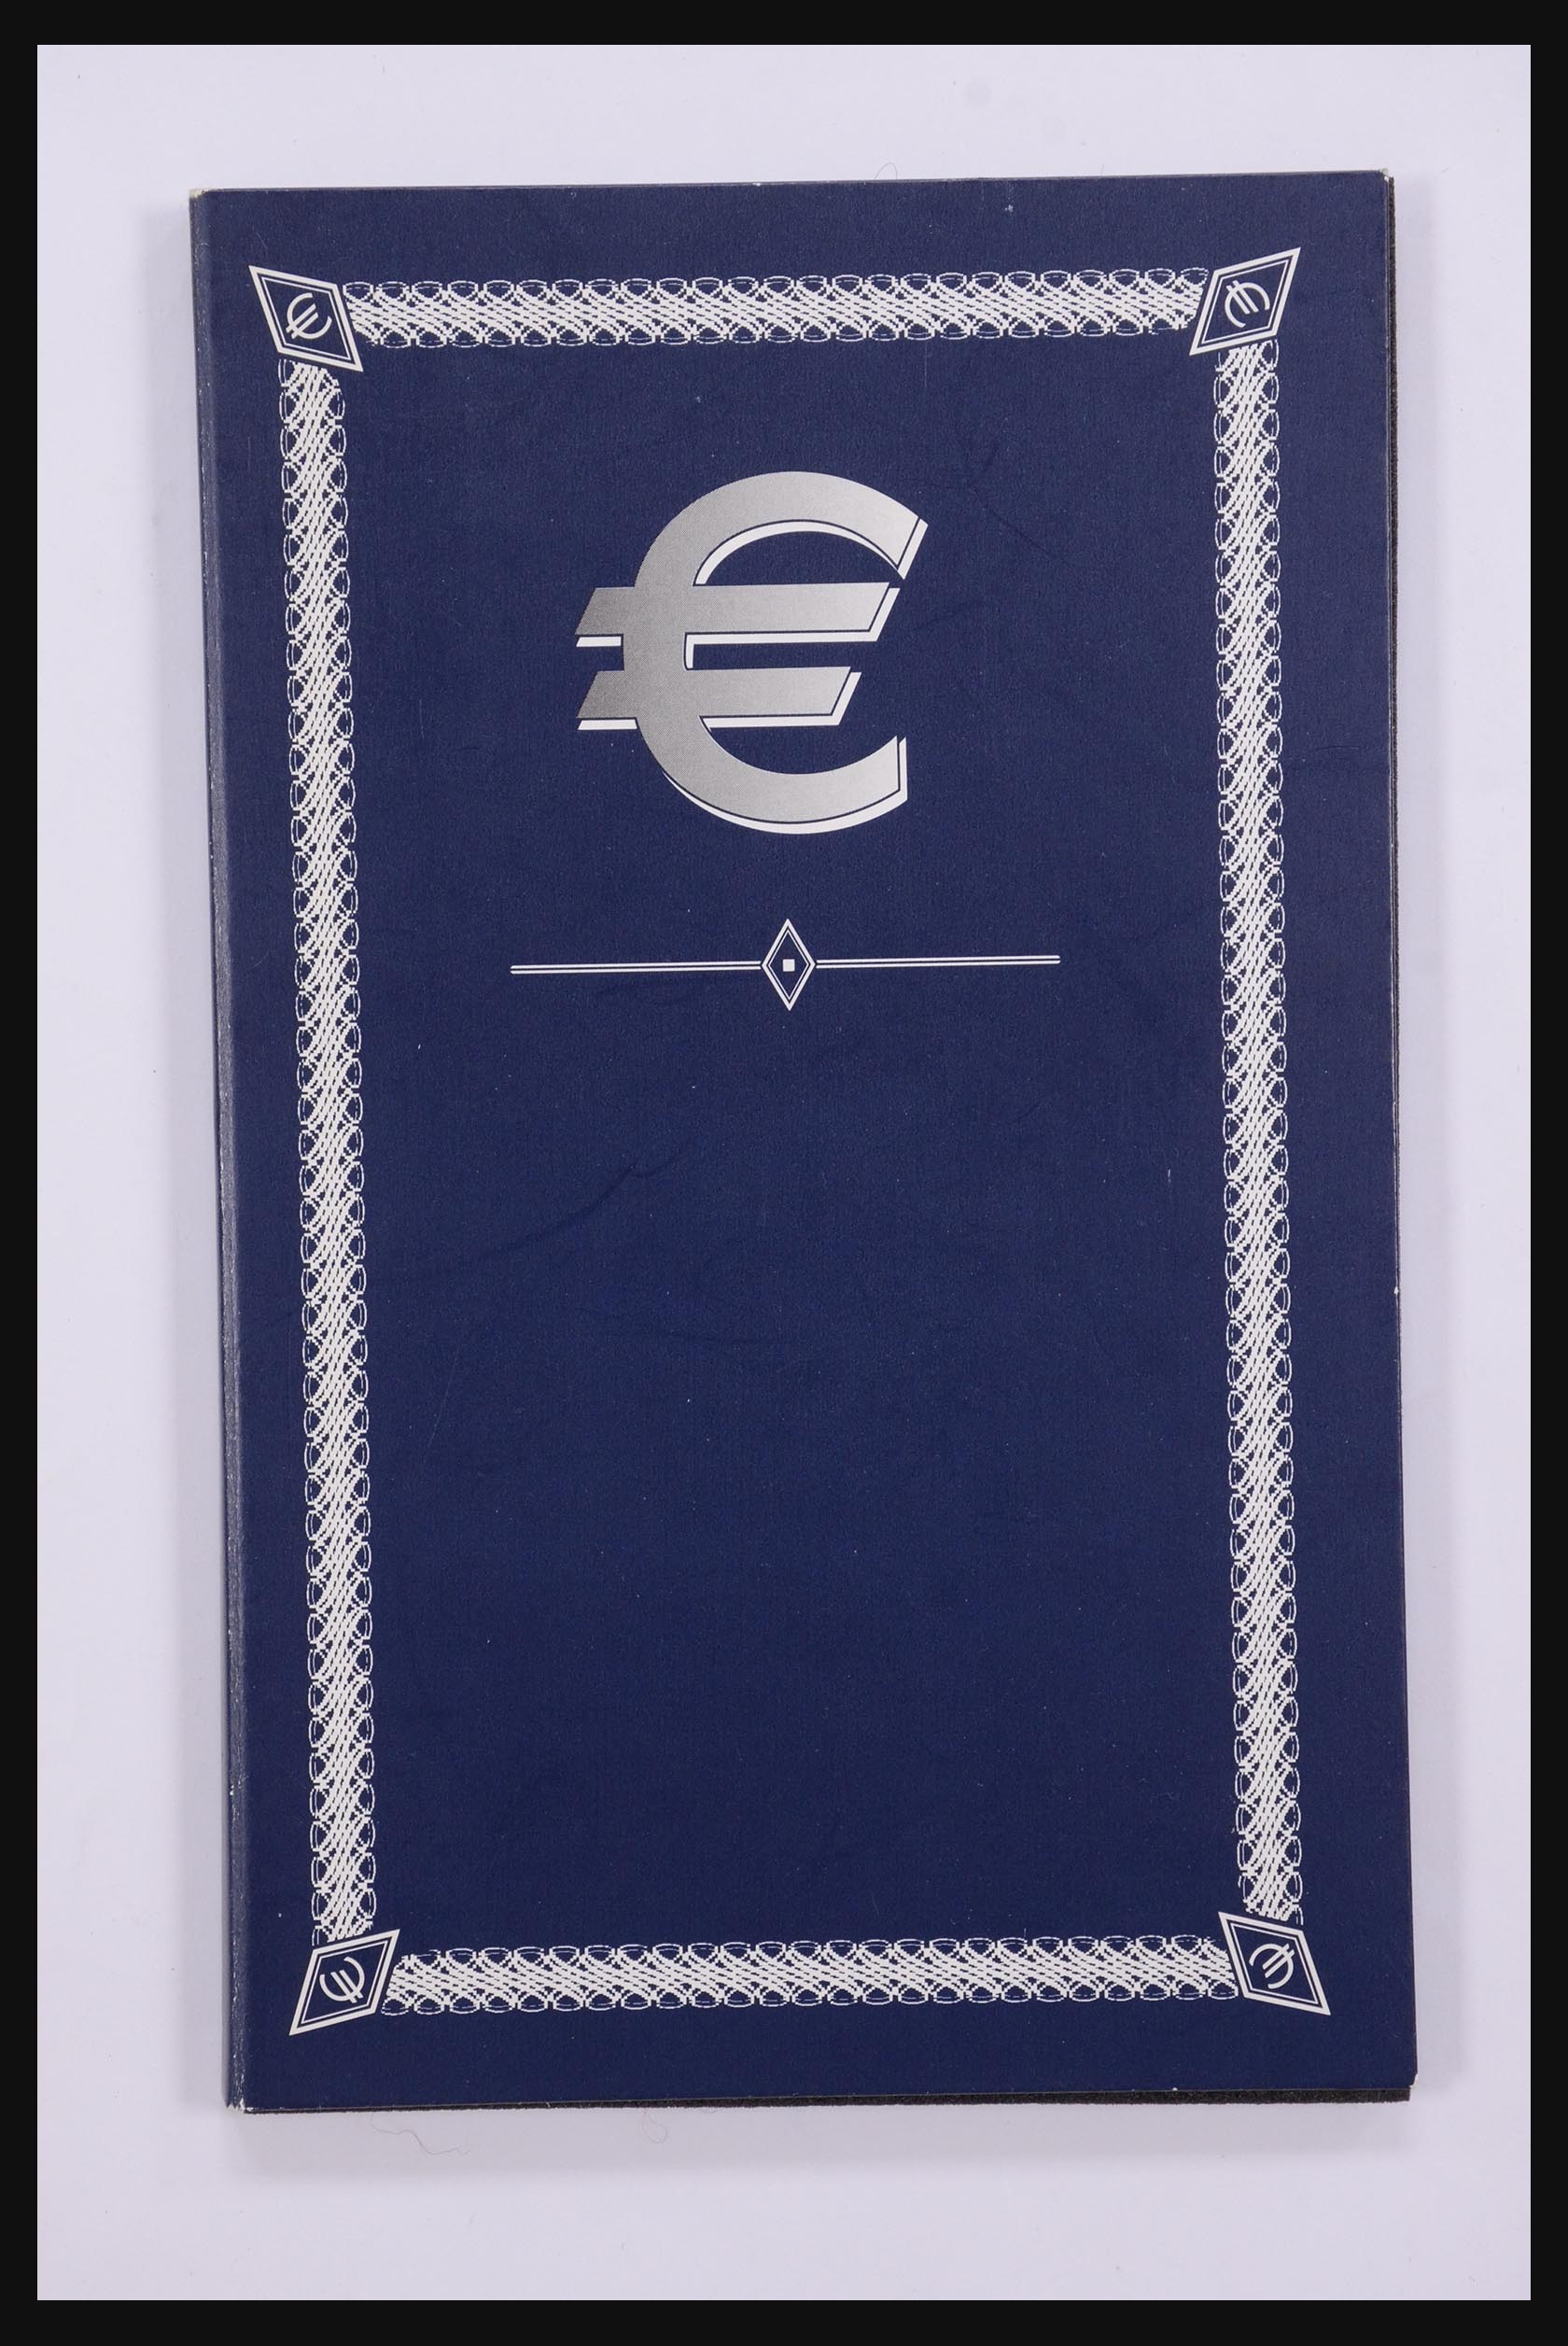 32149 030 - 32149 European countries eurocoins 2003.